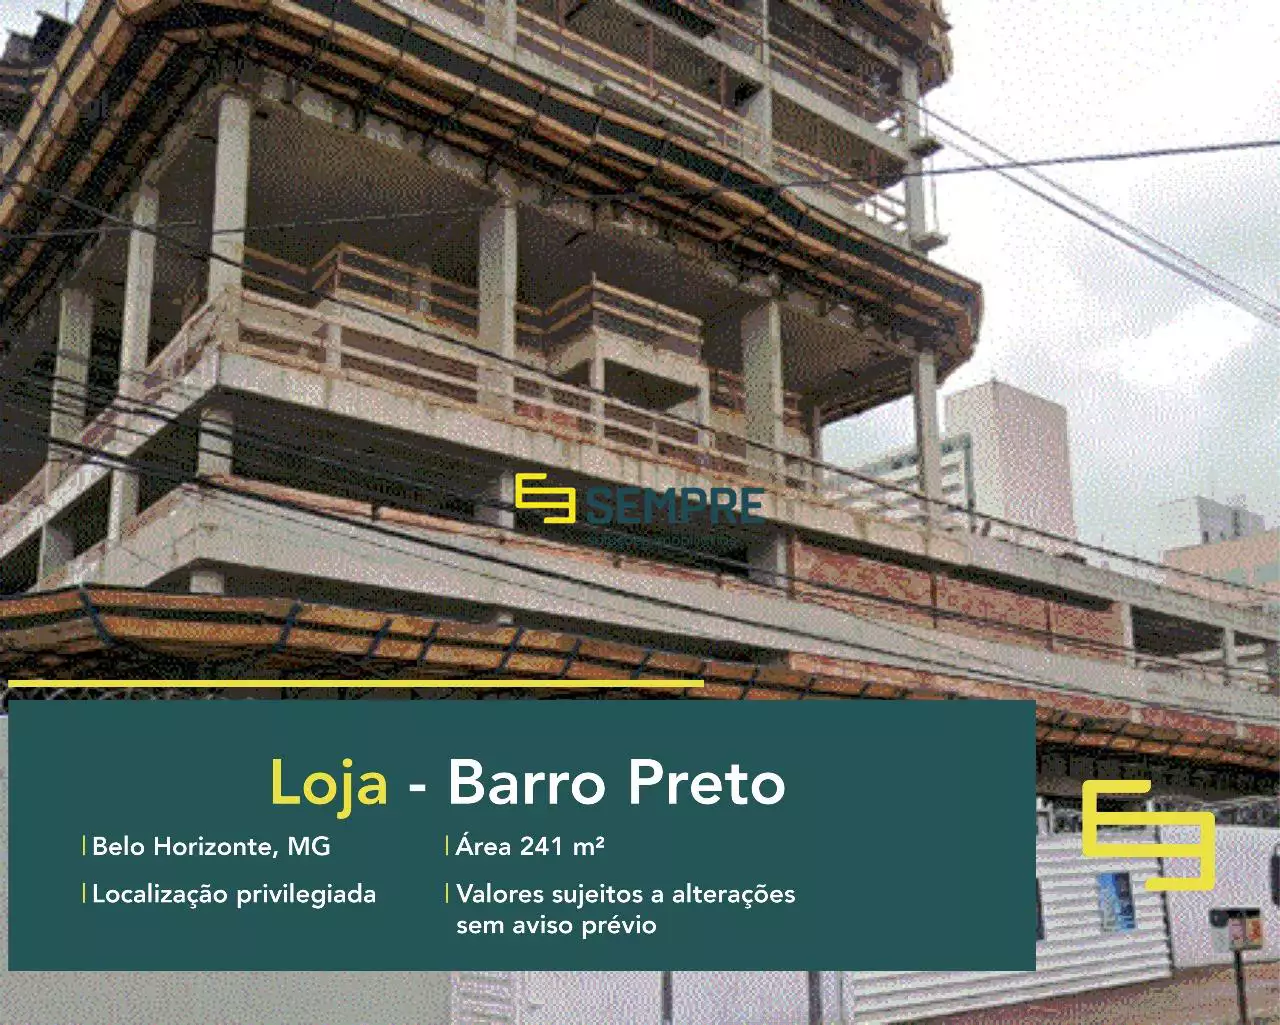 Loja para vender no Barro Preto em Belo Horizonte, em excelente localização. O estabelecimento comercial conta com área de 241,96 m².